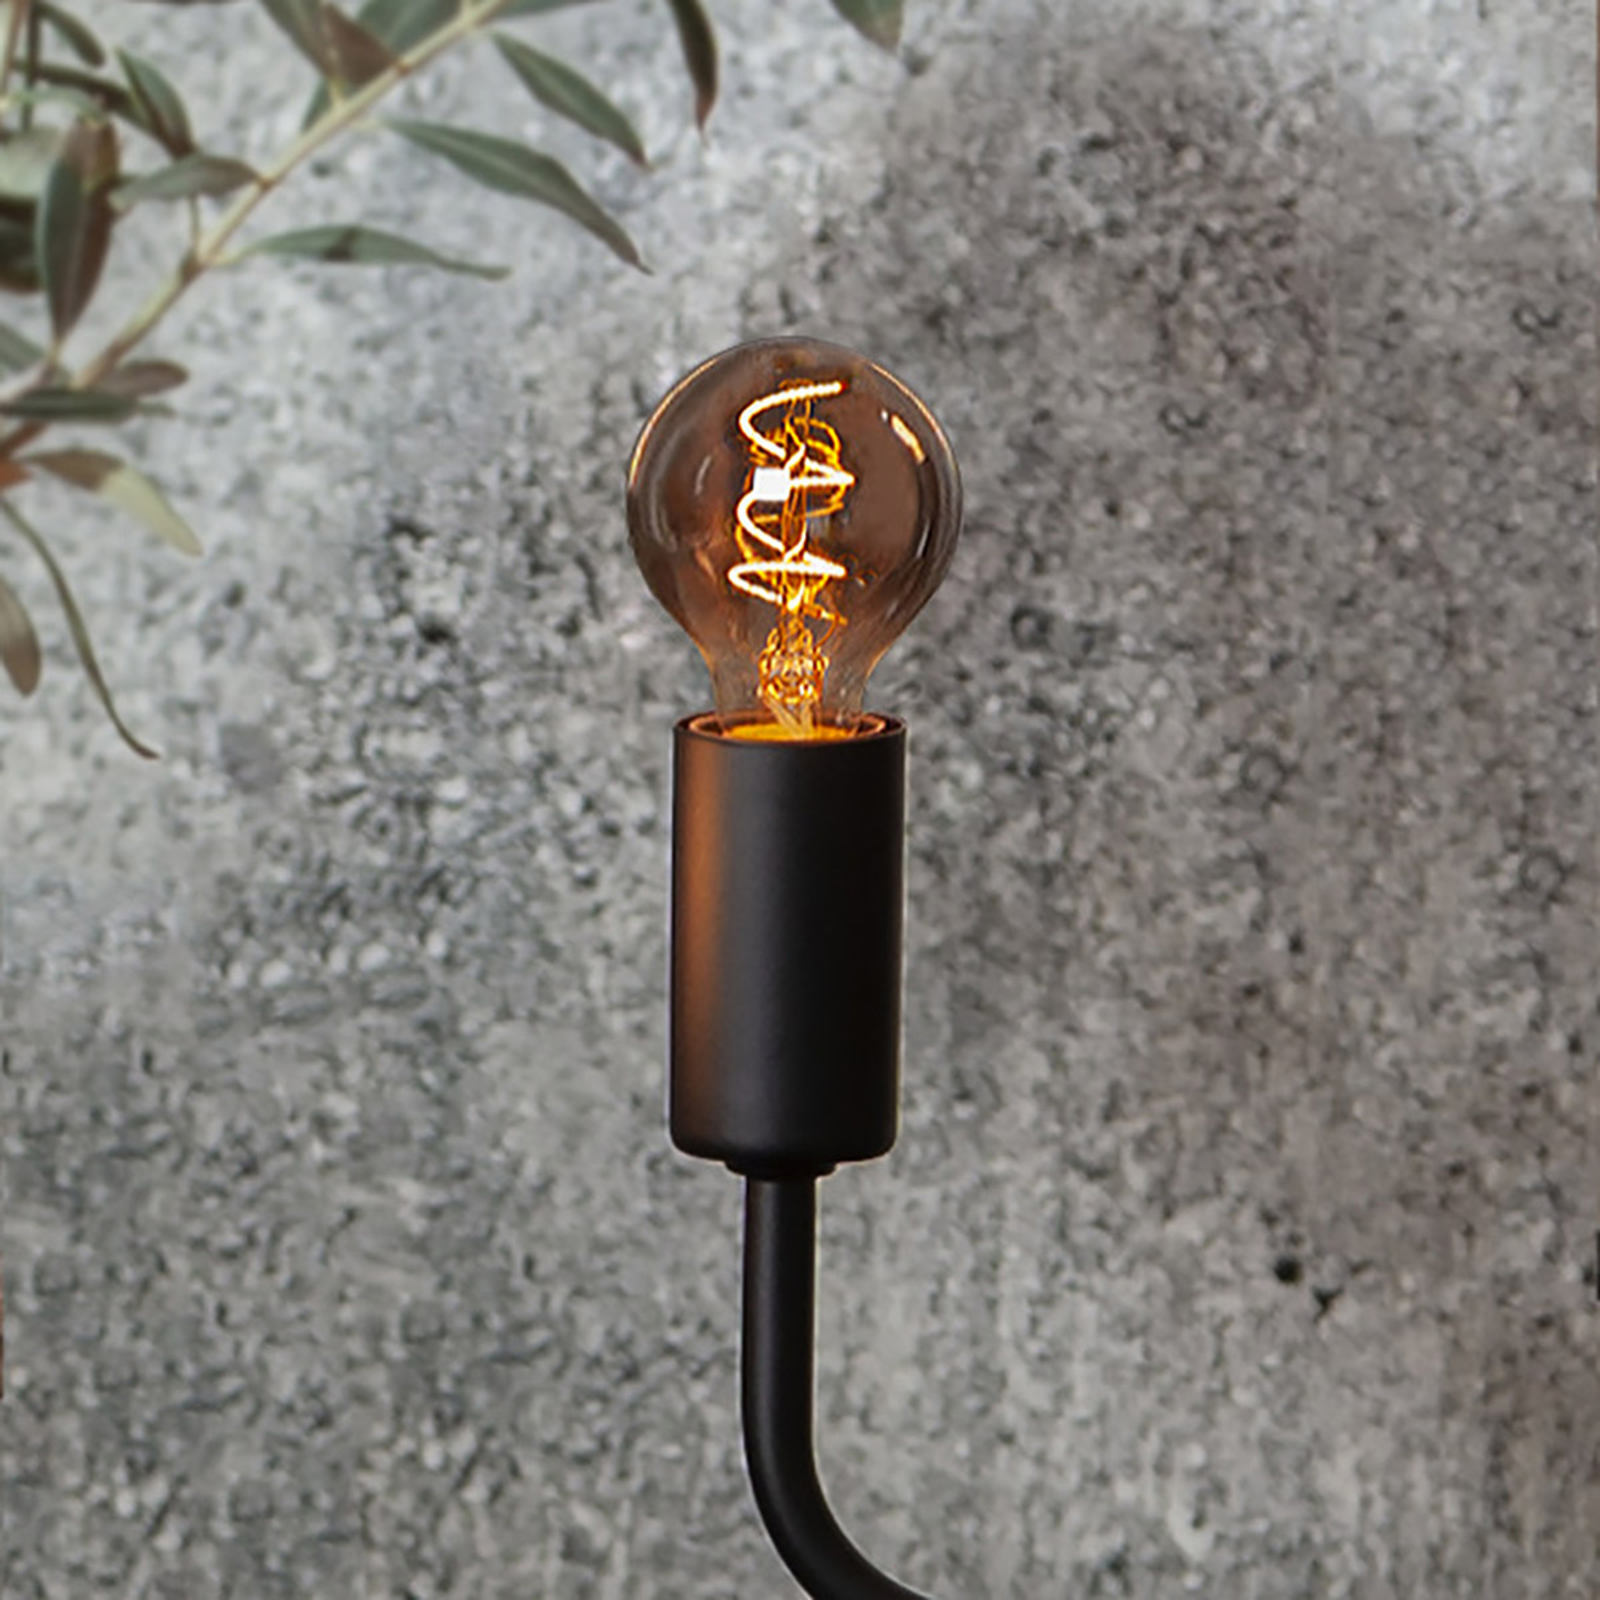 Ampoule LED P45 E14 3 W 1 800 K gris fumée